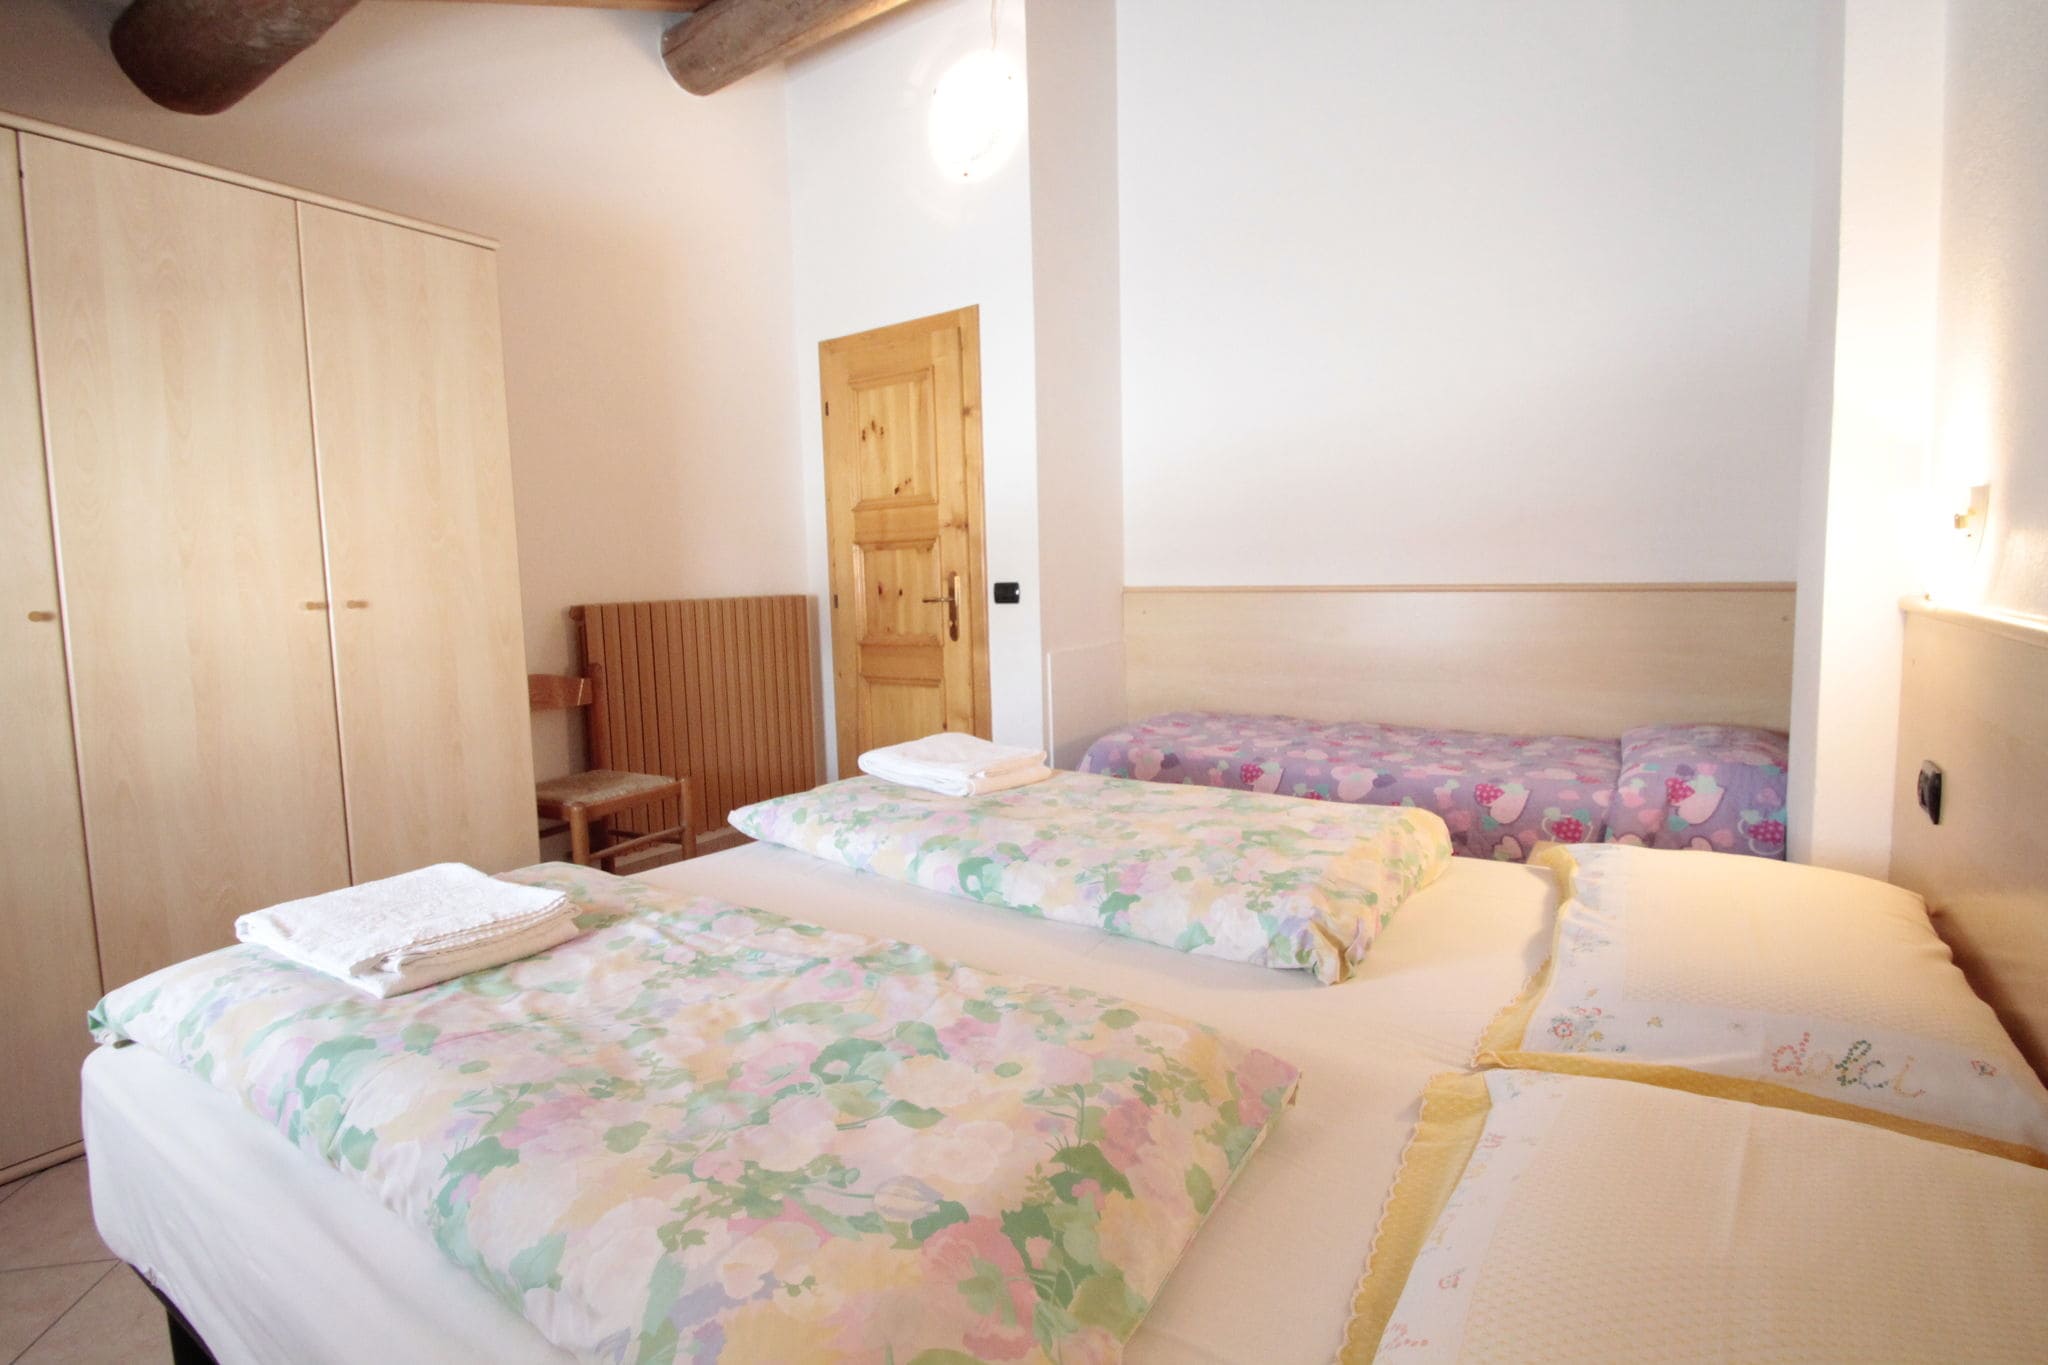 Maison de vacances luxeuse à Livigno, Italie près des pistes